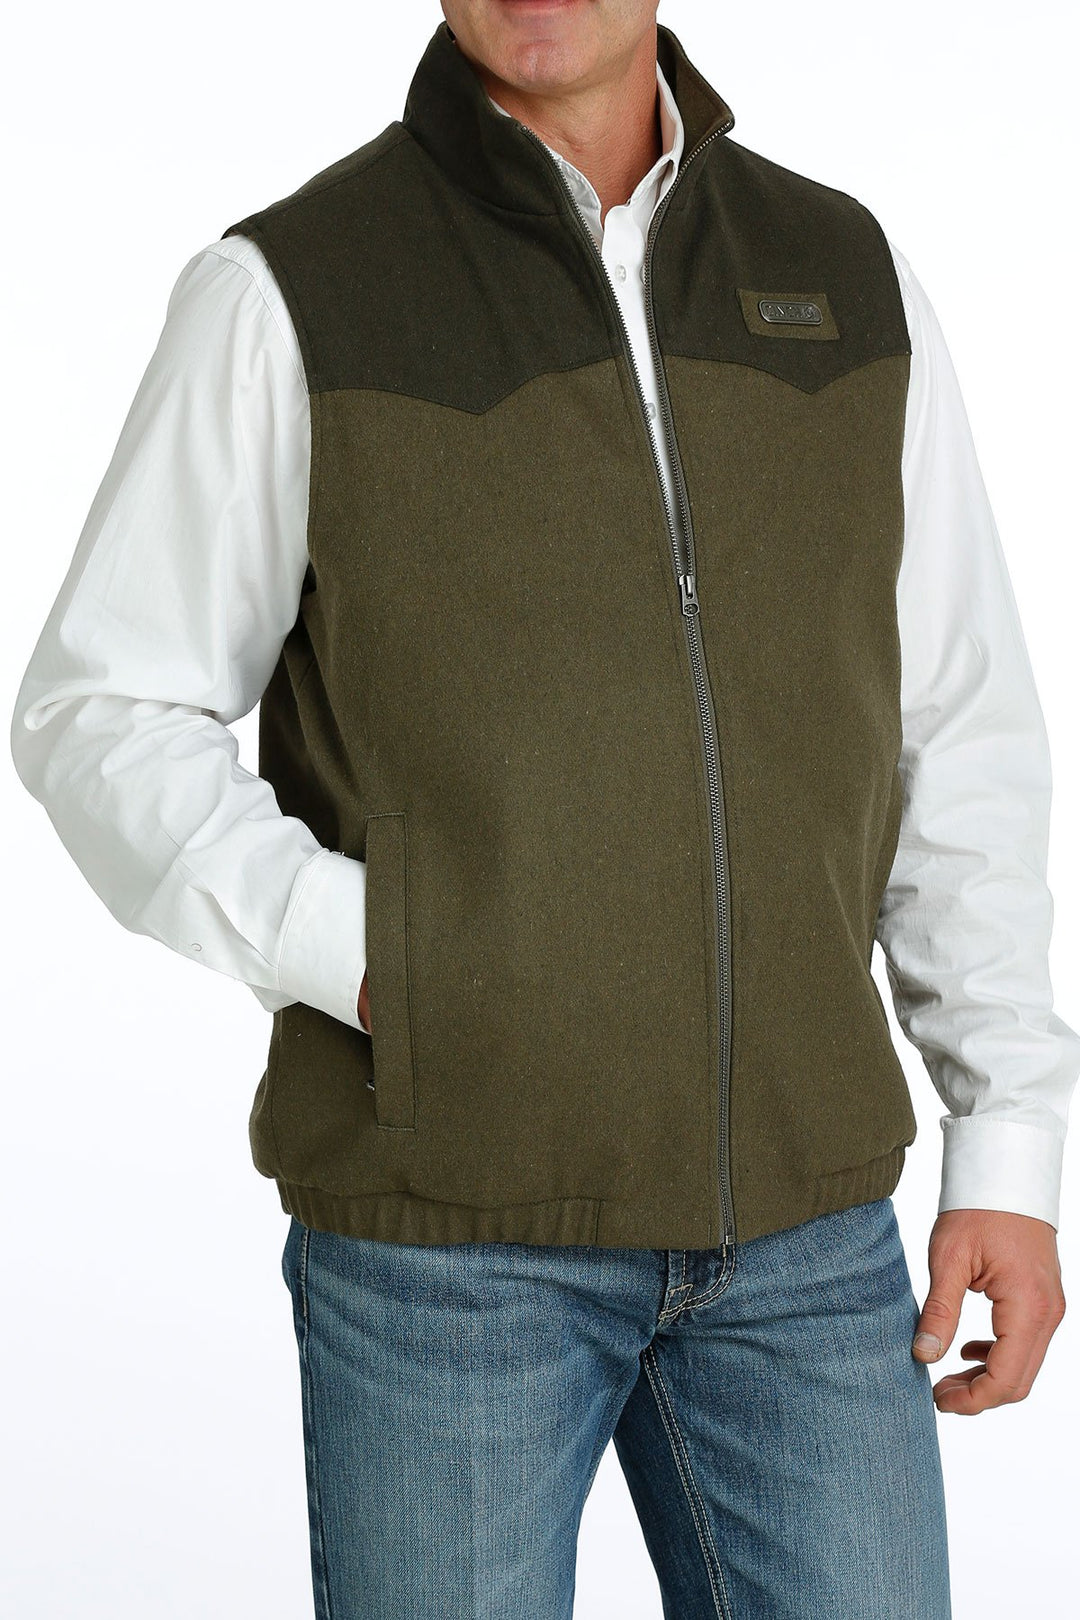 Cinch Men's Concealed Carry Olive Wooly Vest